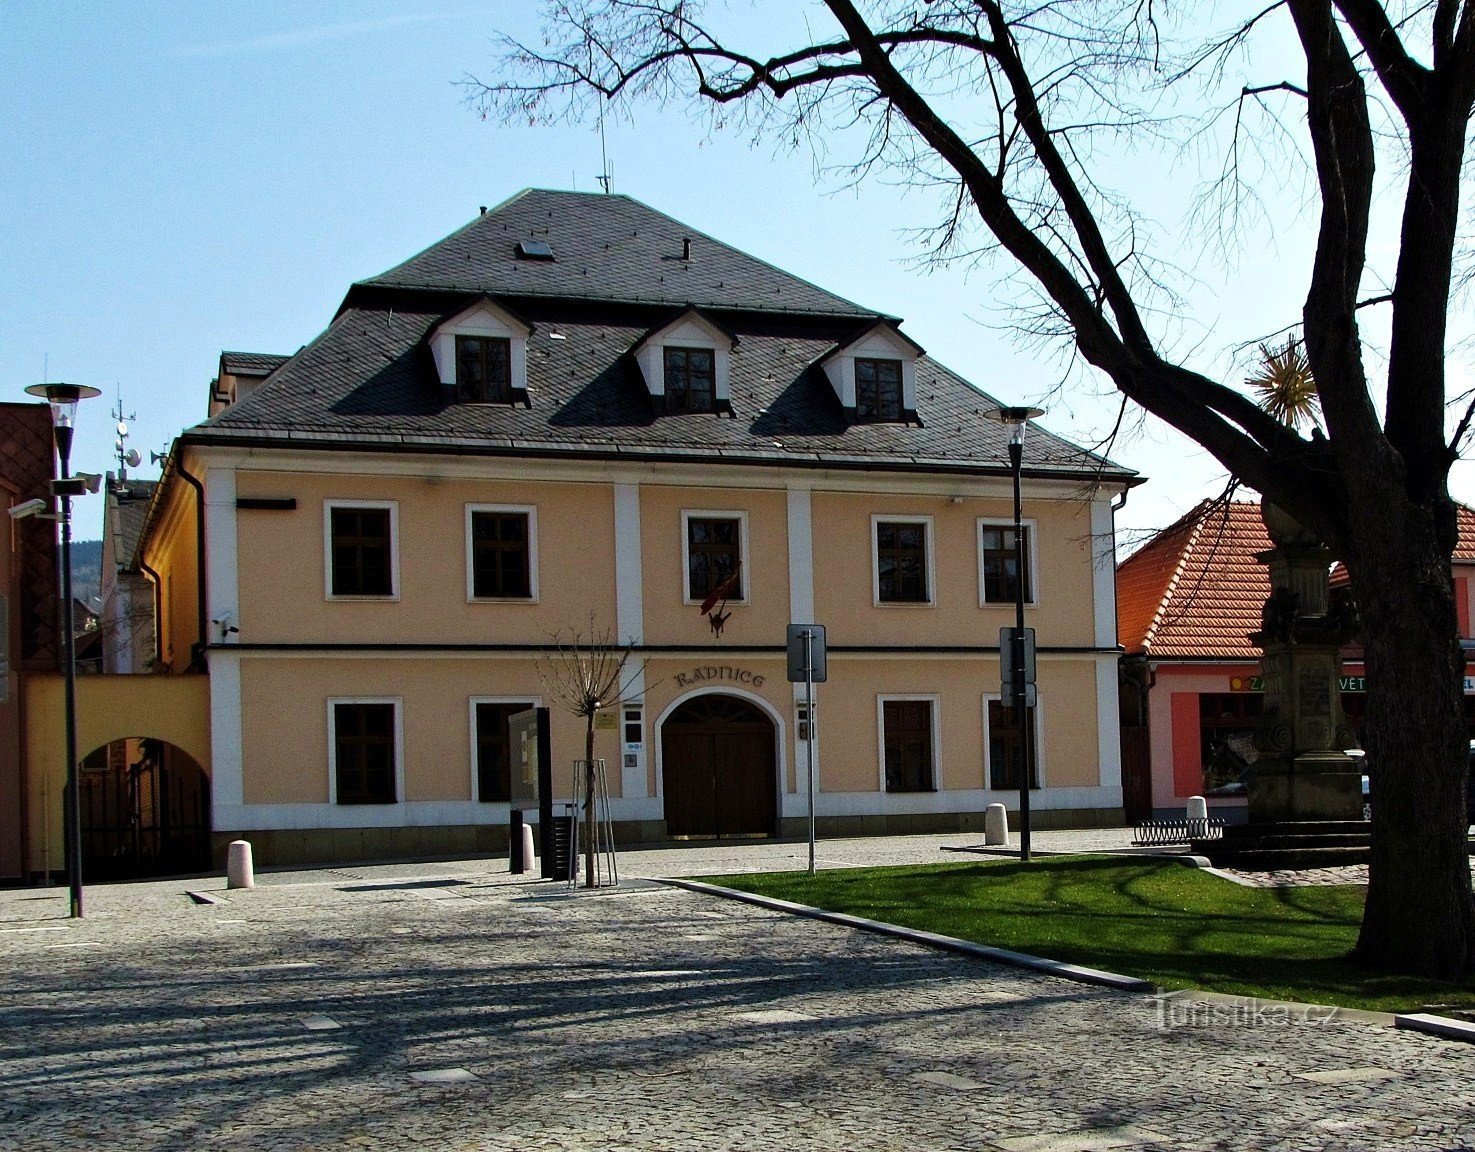 Town Hall in Brumov - Bylnice